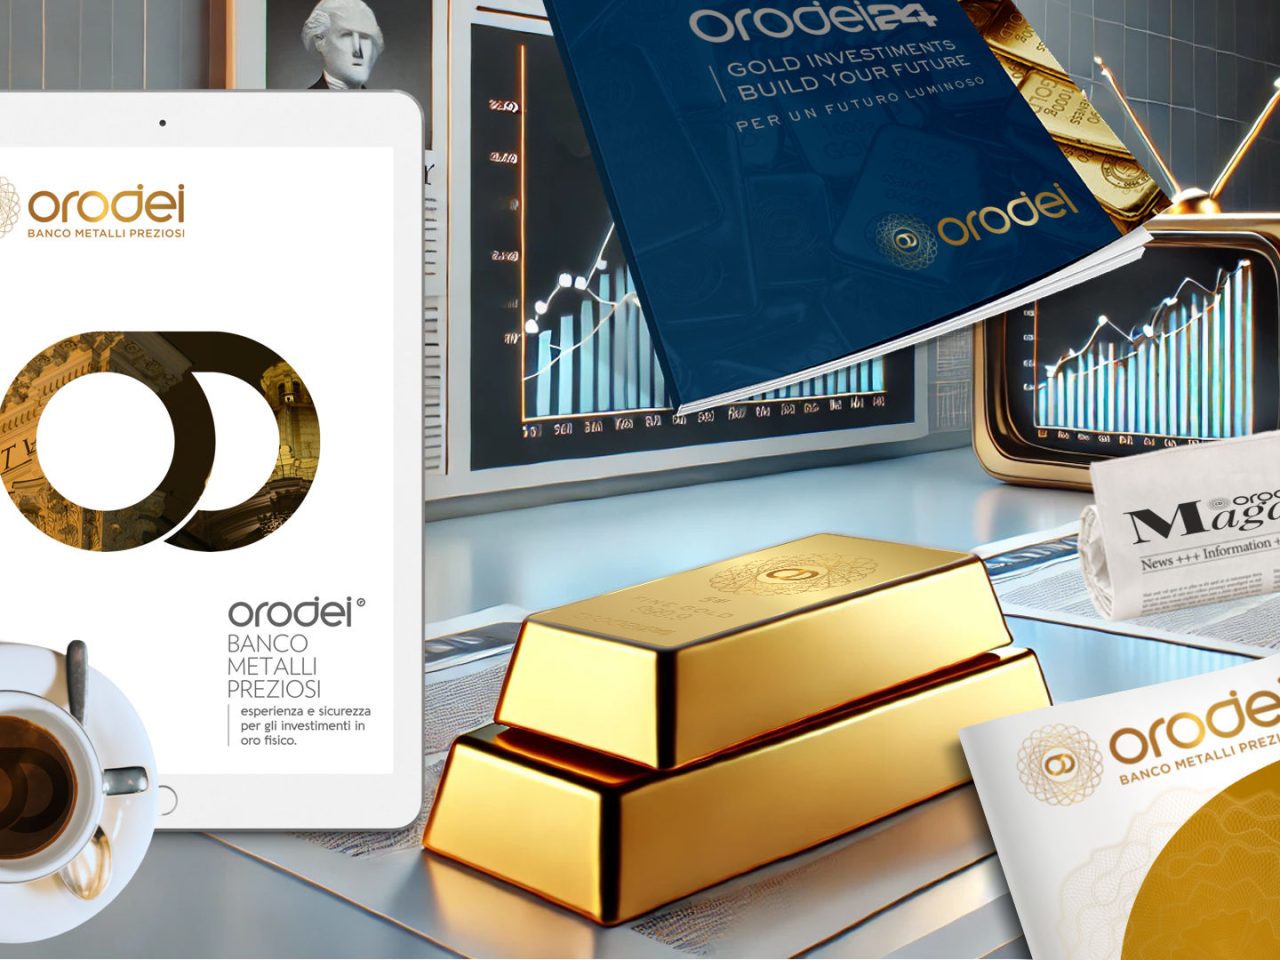 Orodei Banco Metalli Preziosi: Cinque Motivi per Comprare Oro Secondo i Media e gli Esperti Finanziari Più Influenti